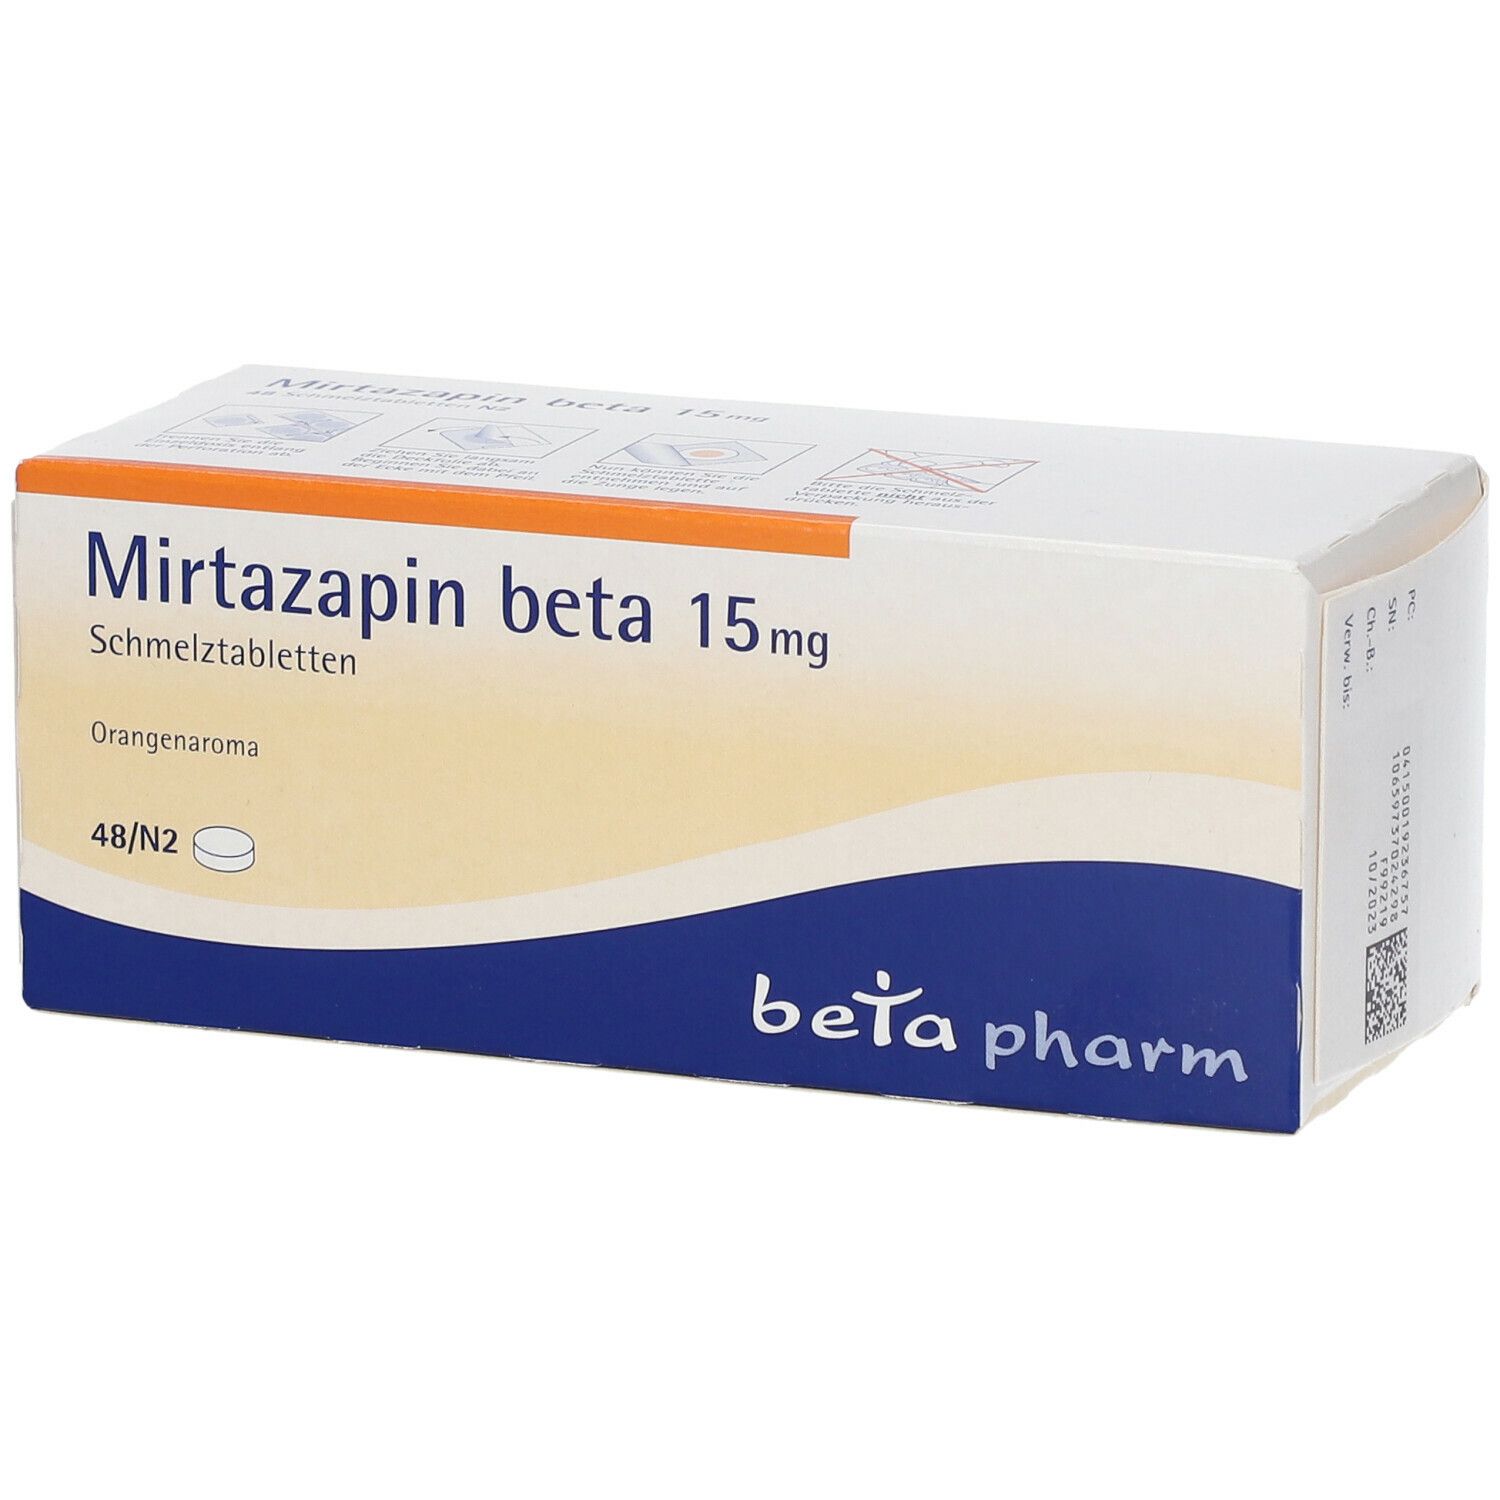 Mirtazapin beta 15 mg Schmelztabletten